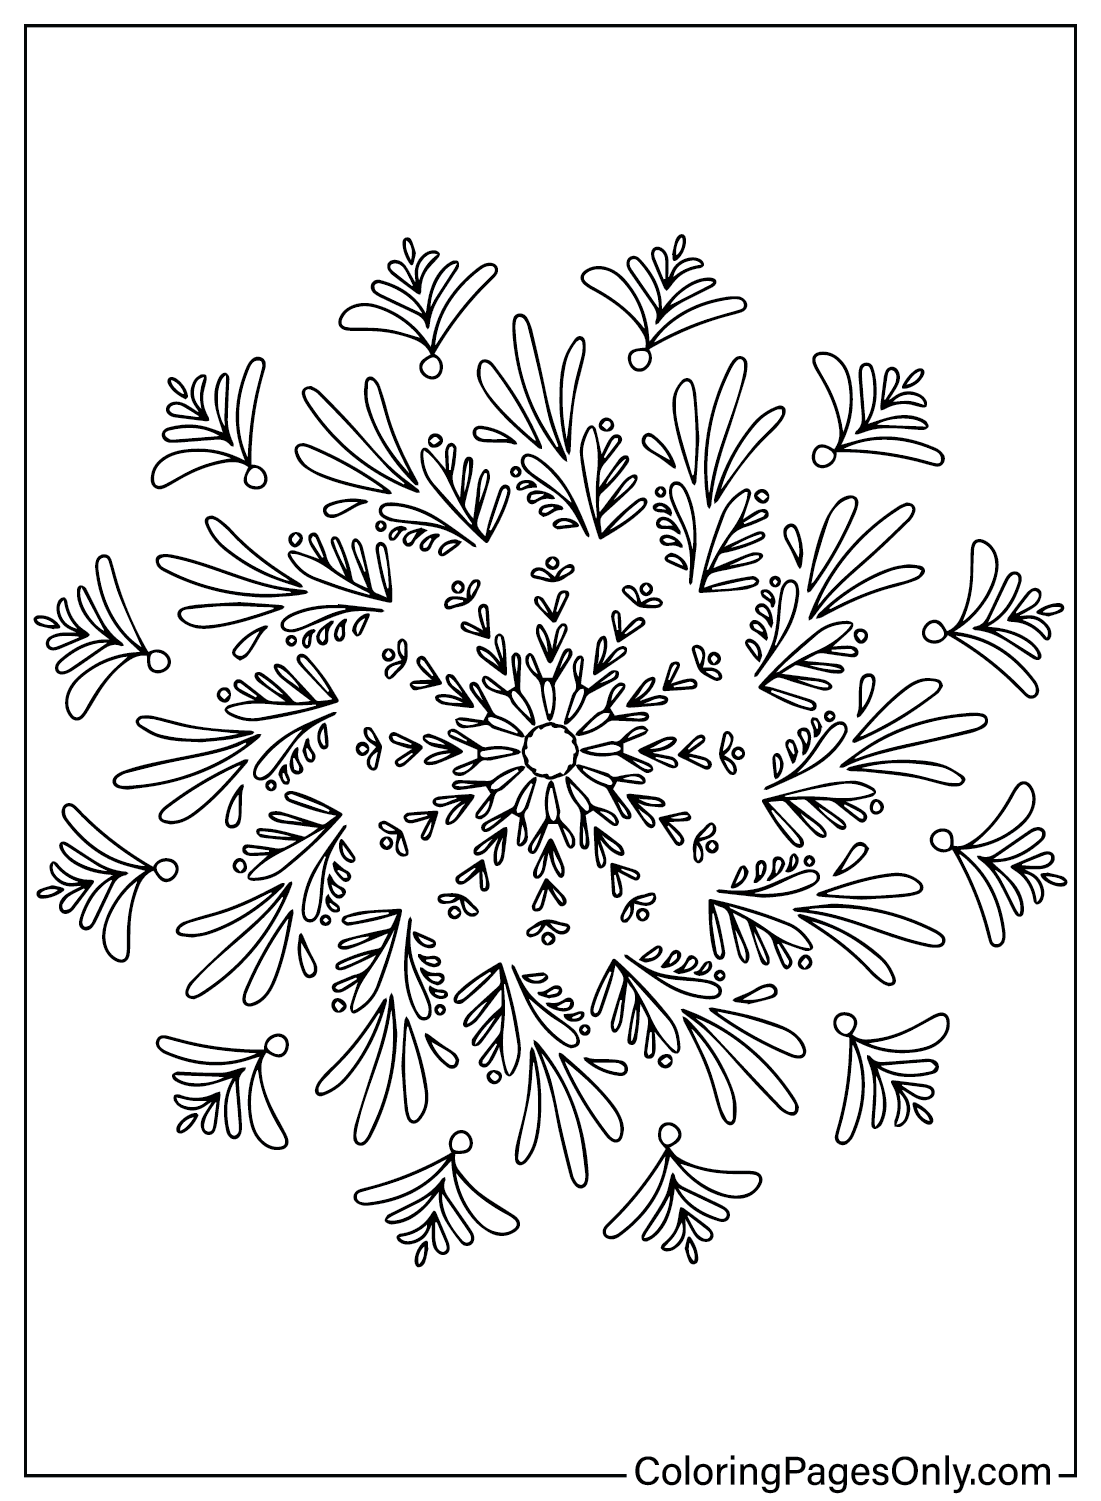 Página para colorear de un copo de nieve de Snowflake